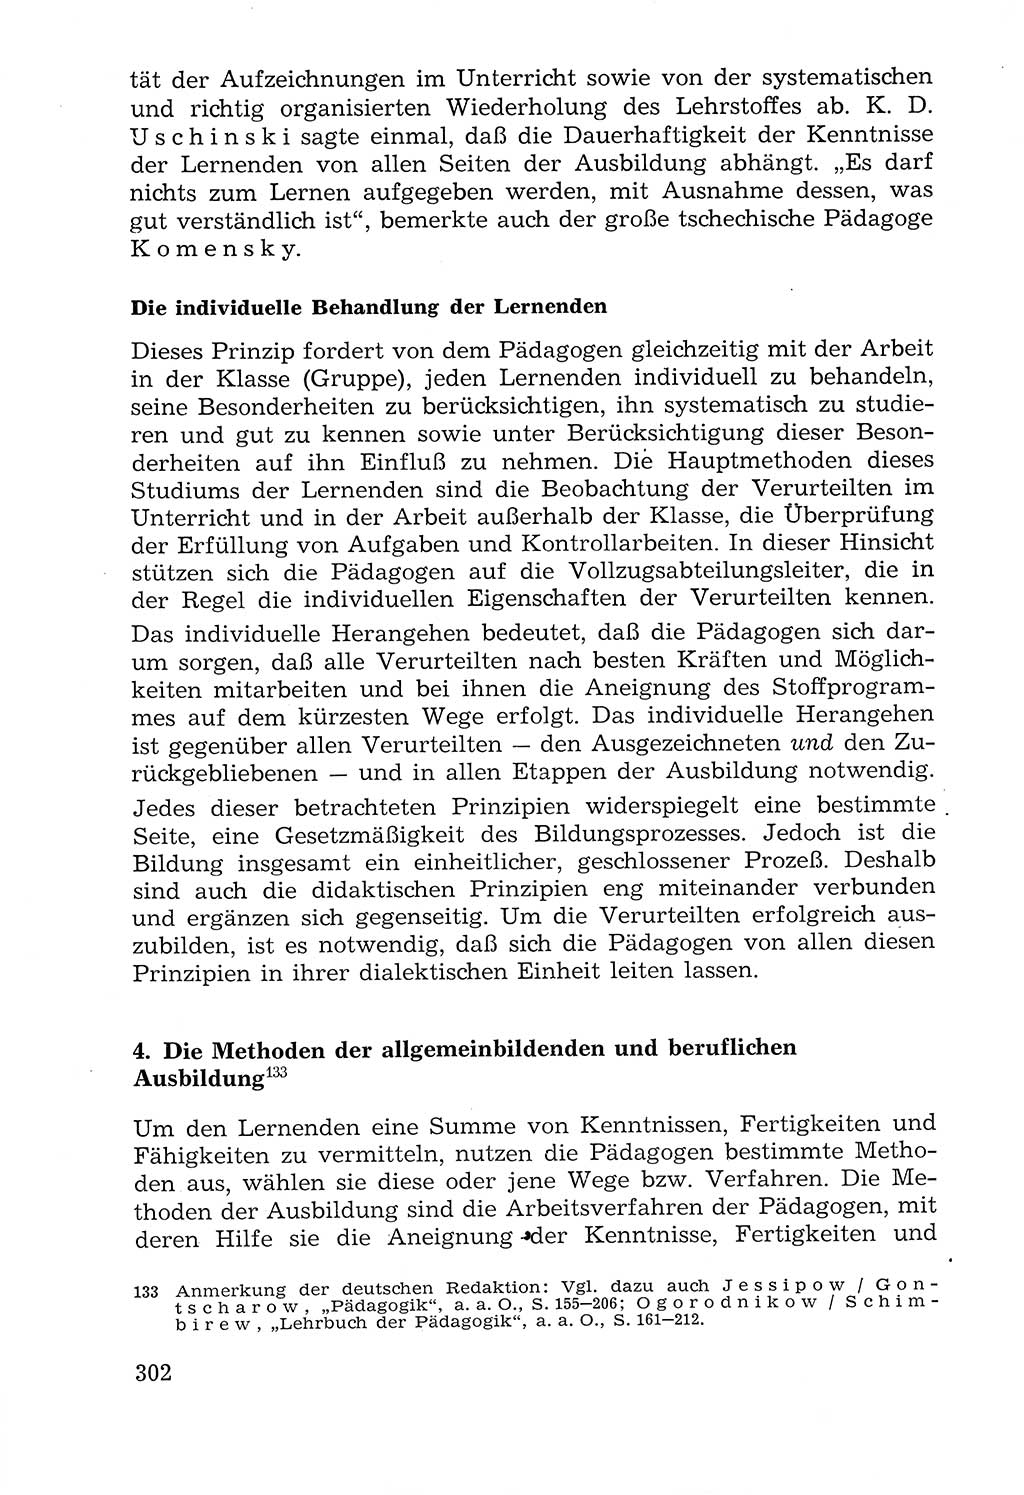 Lehrbuch der Strafvollzugspädagogik [Deutsche Demokratische Republik (DDR)] 1969, Seite 302 (Lb. SV-Pd. DDR 1969, S. 302)